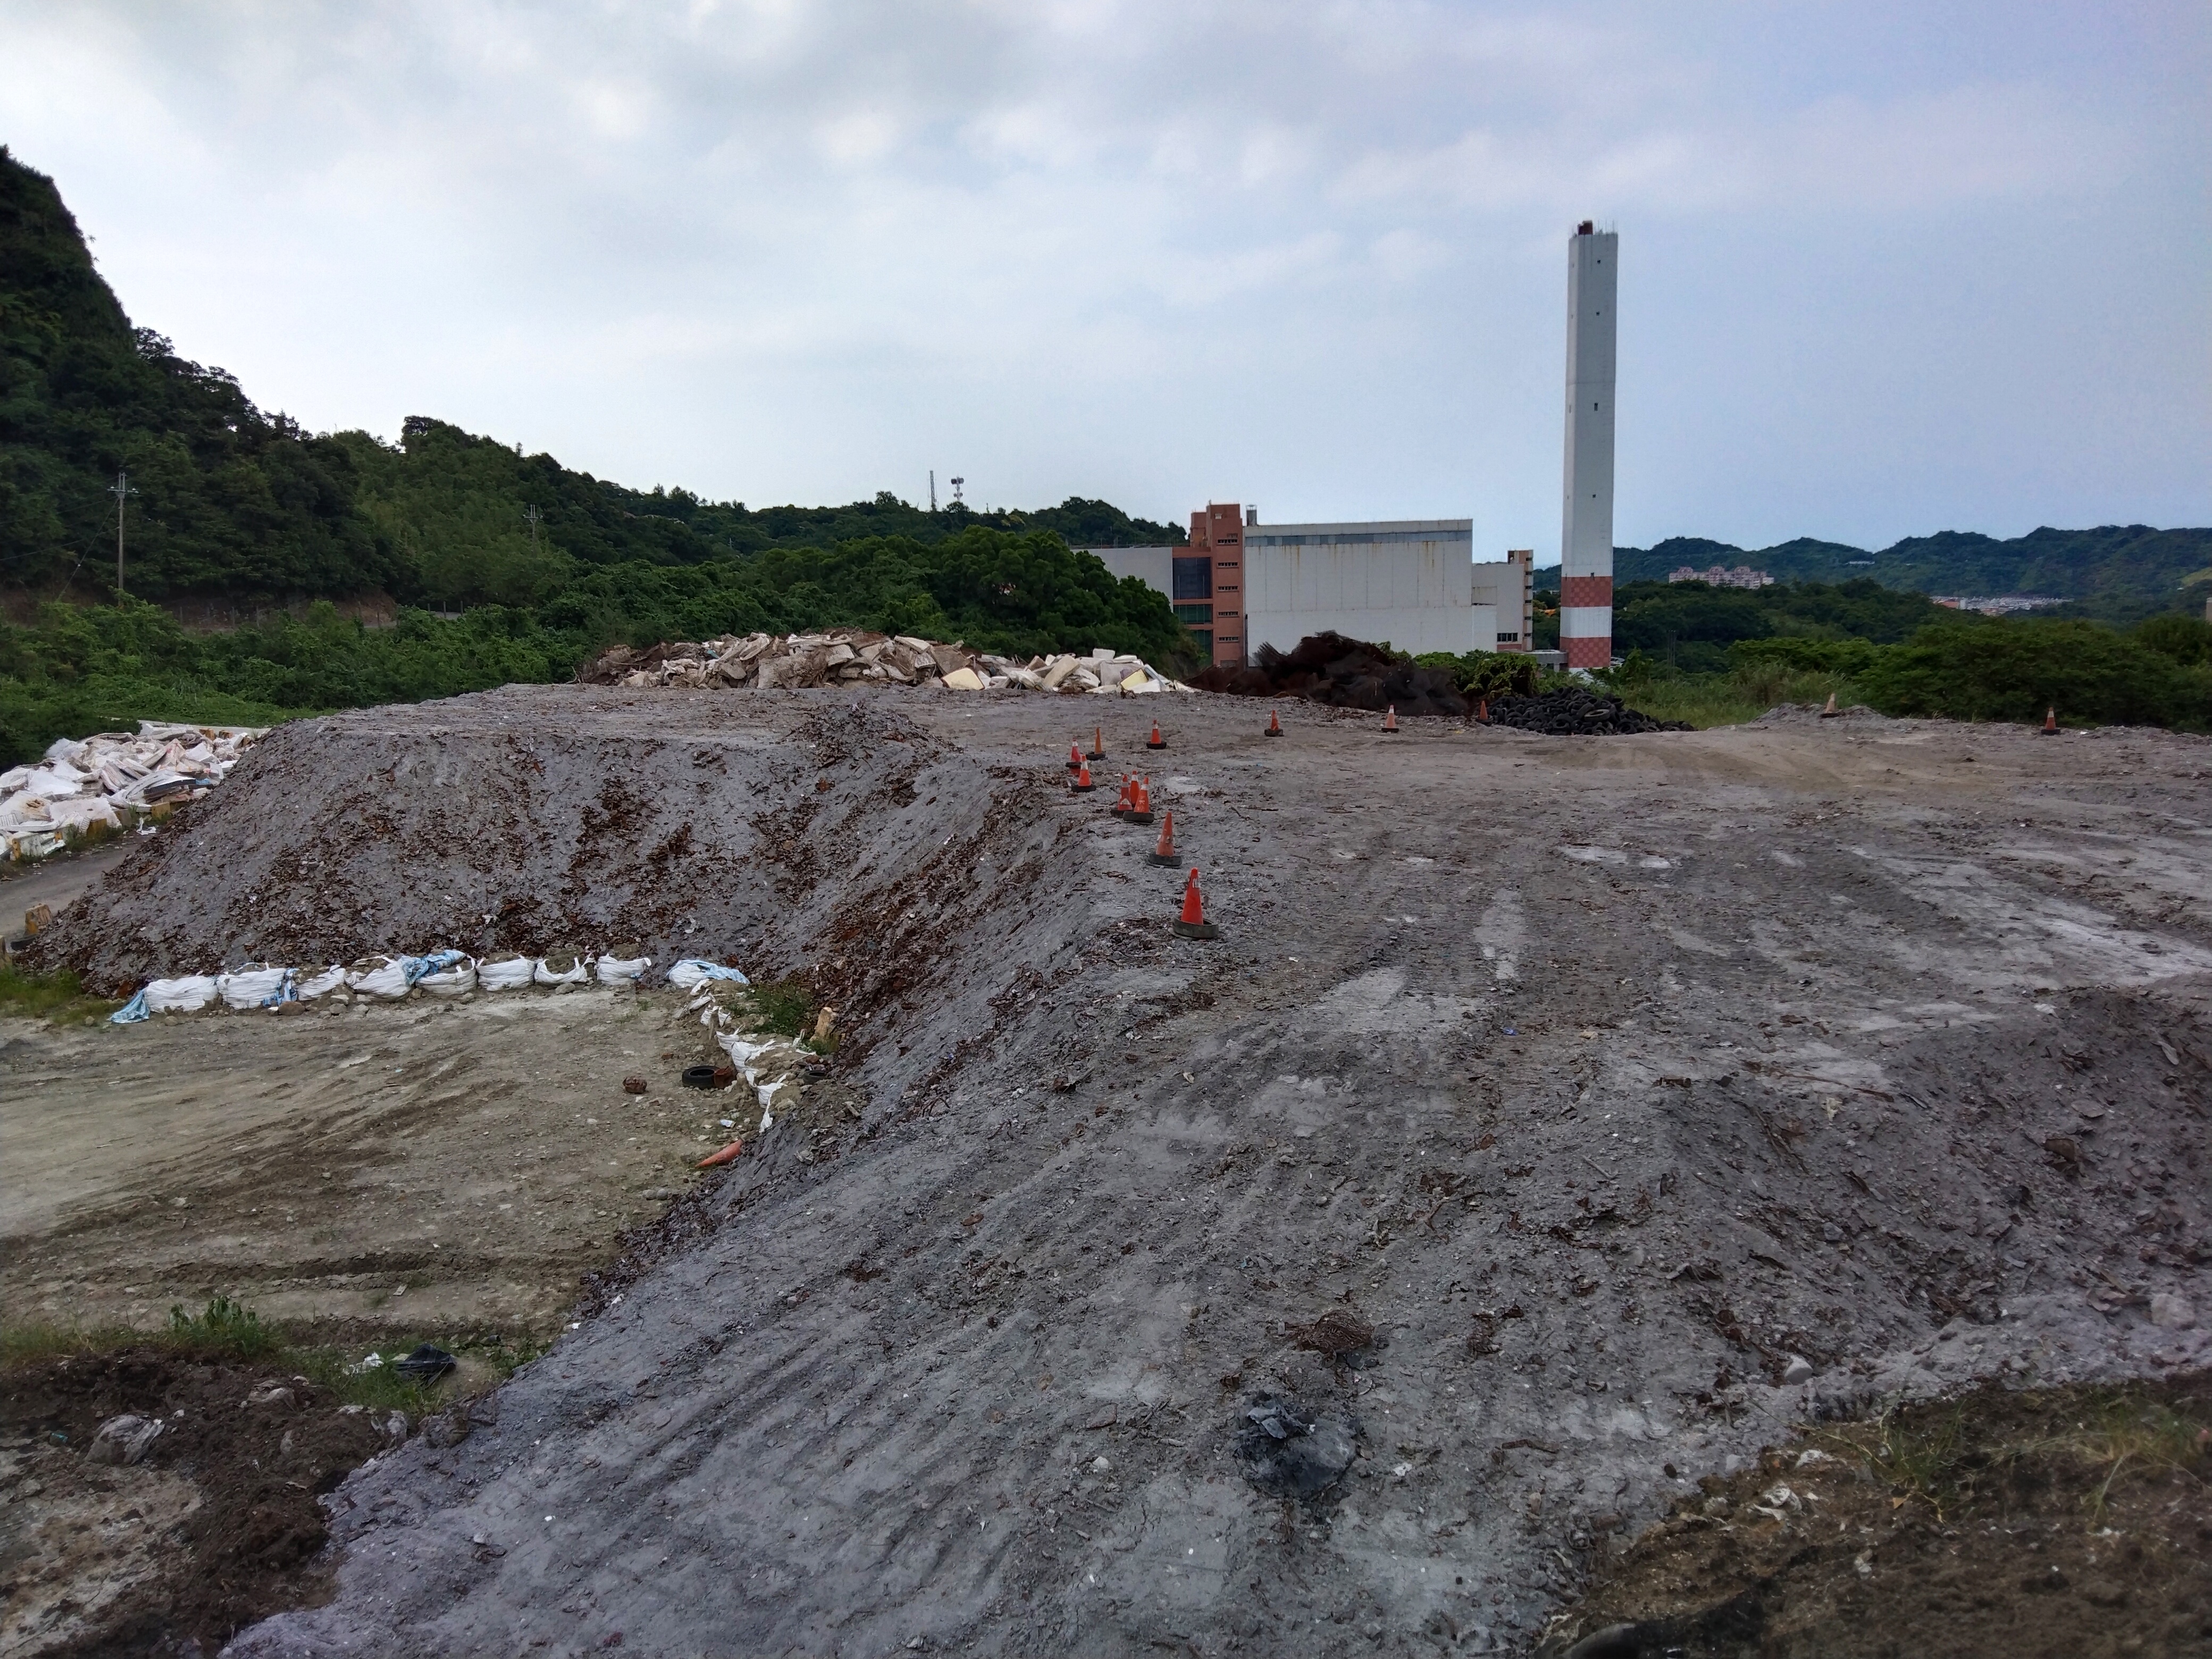 基隆市天外天垃圾掩埋场前年出现焚化厂底渣「垃圾山」，引发外界疑虑。联合报资料照、记者邱瑞杰摄影